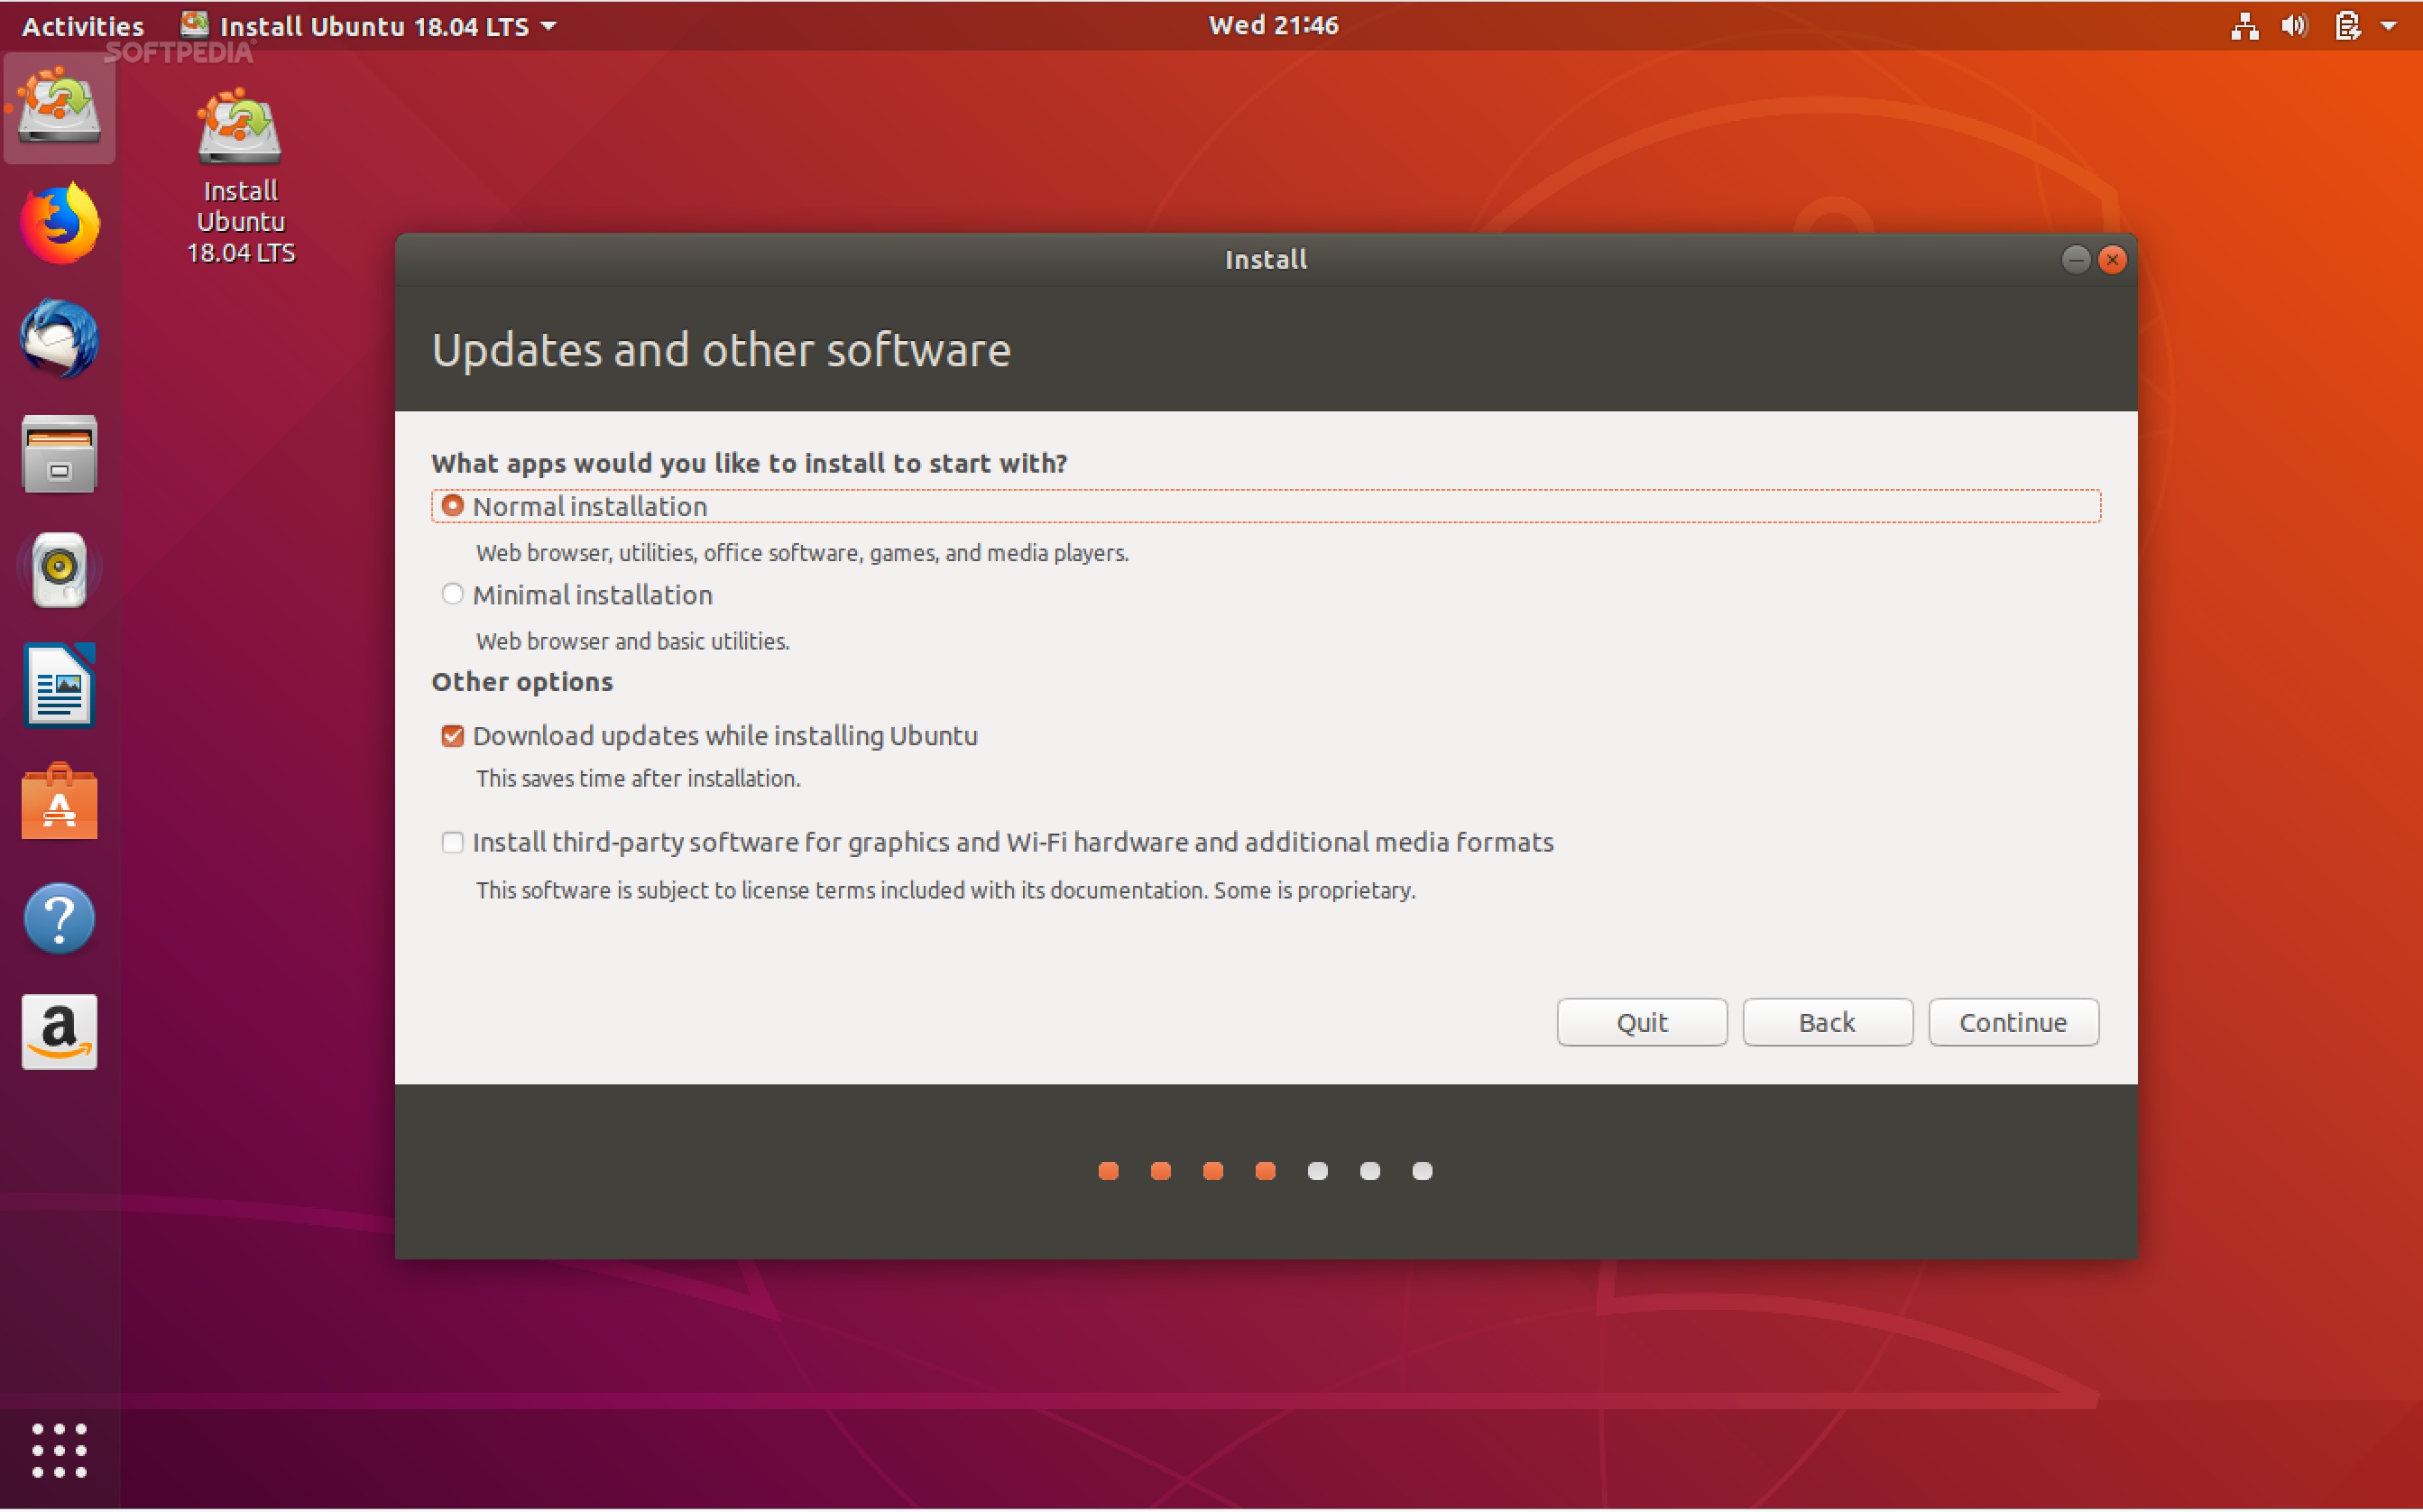 install cudnn ubuntu 20.04